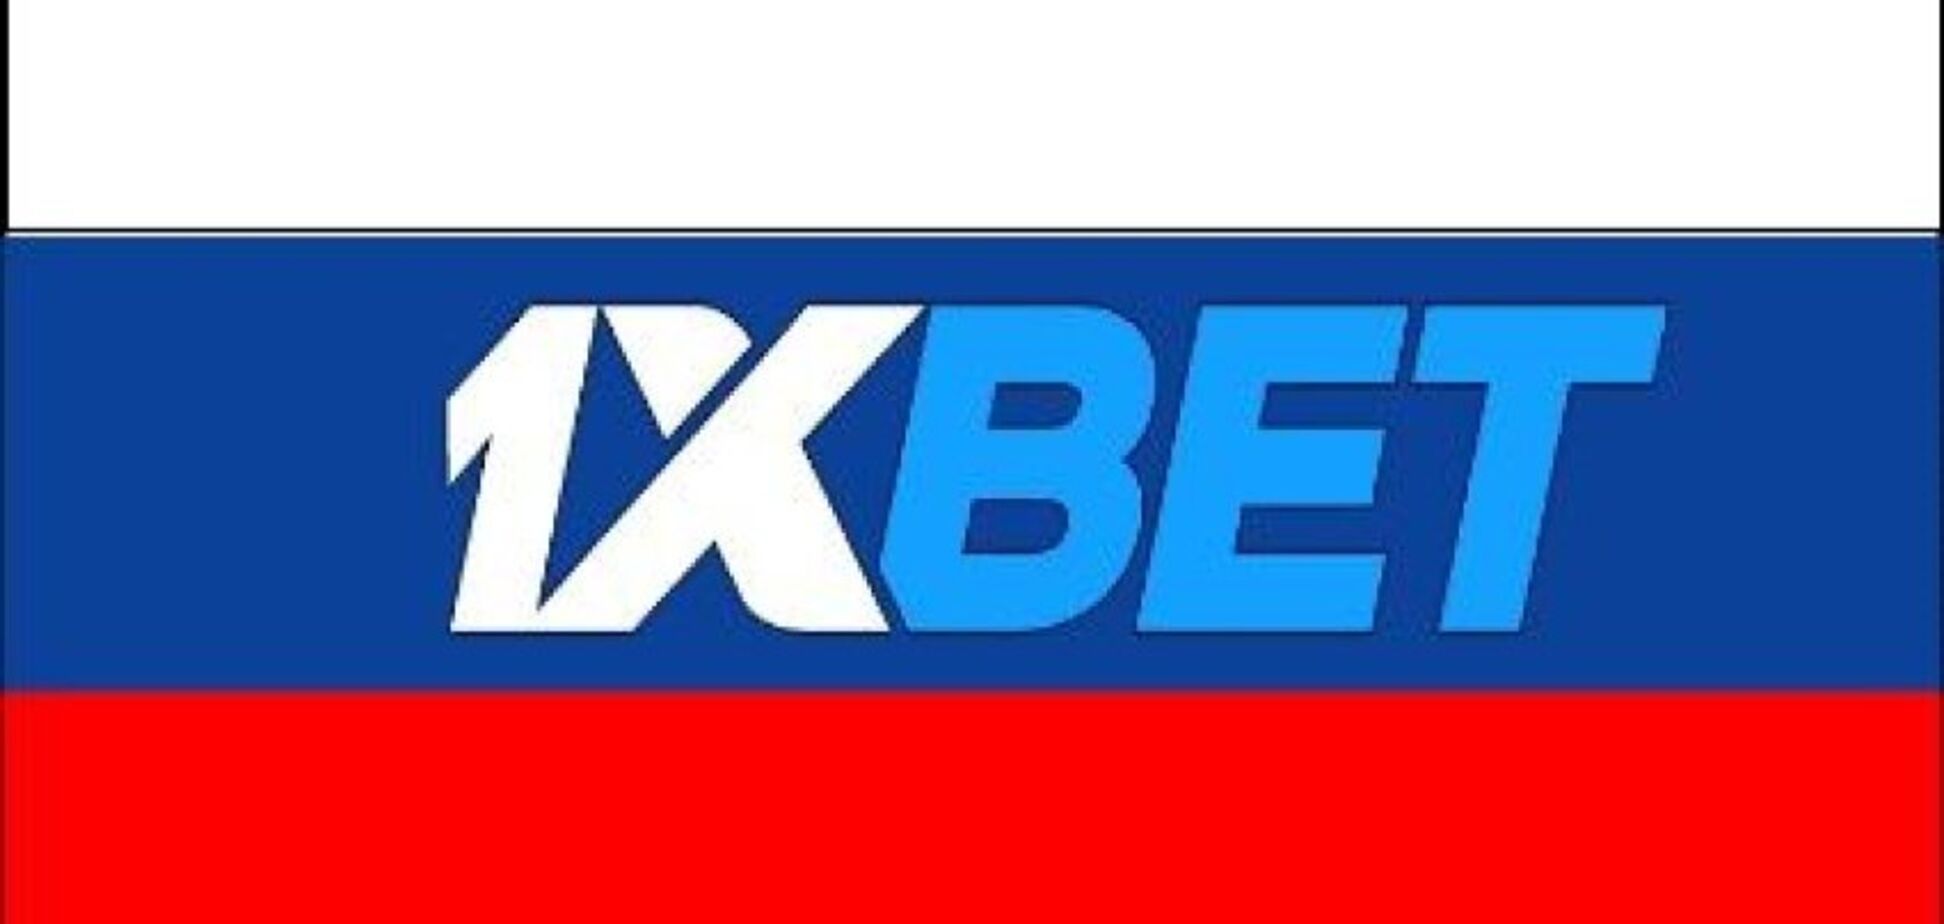 Лицензию 1xbet аннулируют, если будет доказано, что это – российская компания, – глава КРАИЛ